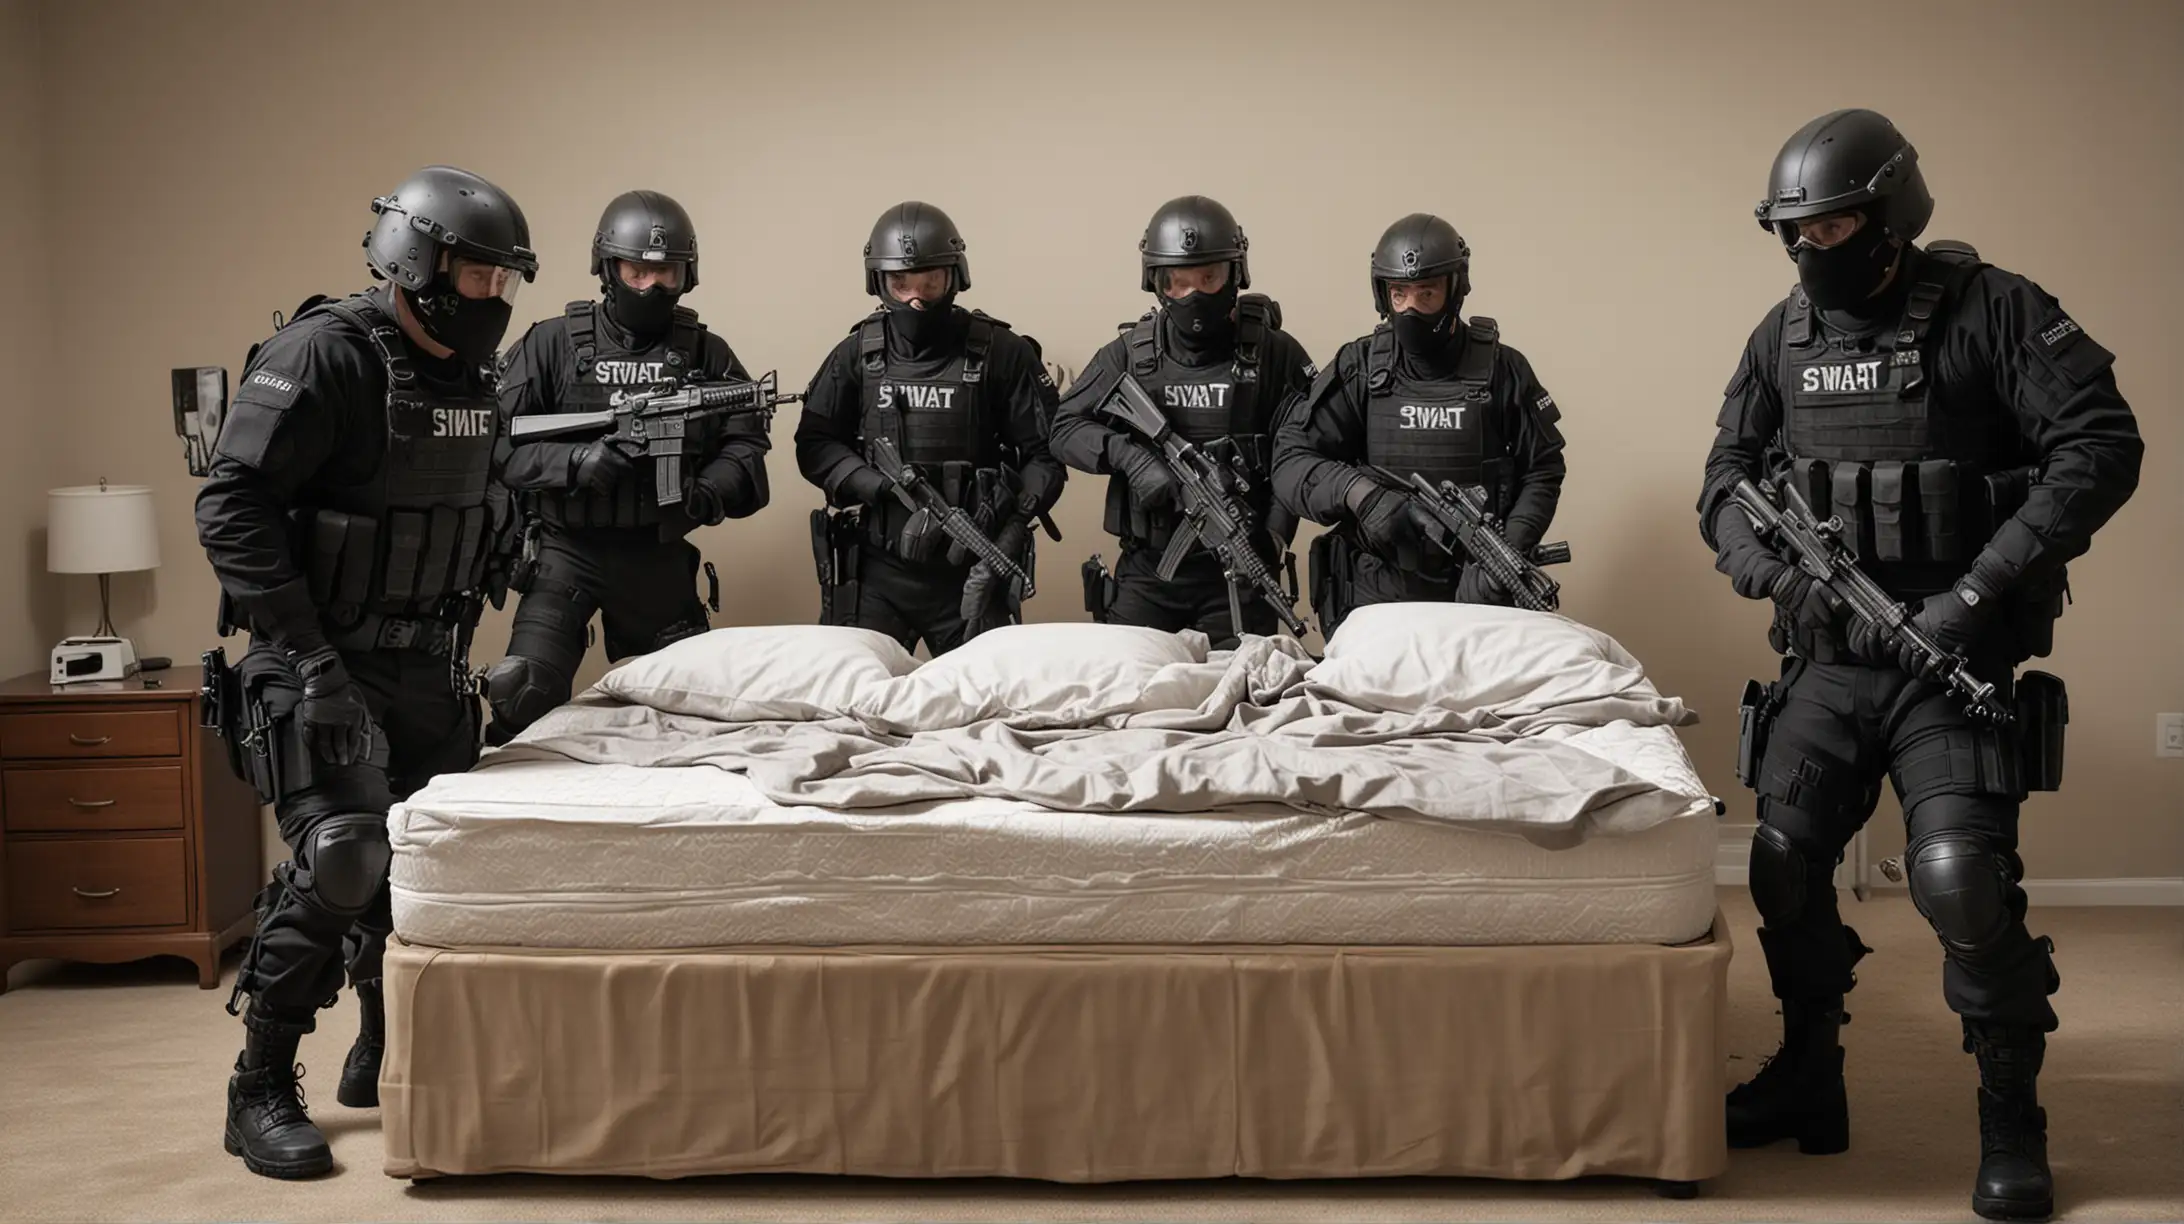 SWAT Team Storming a Bedroom